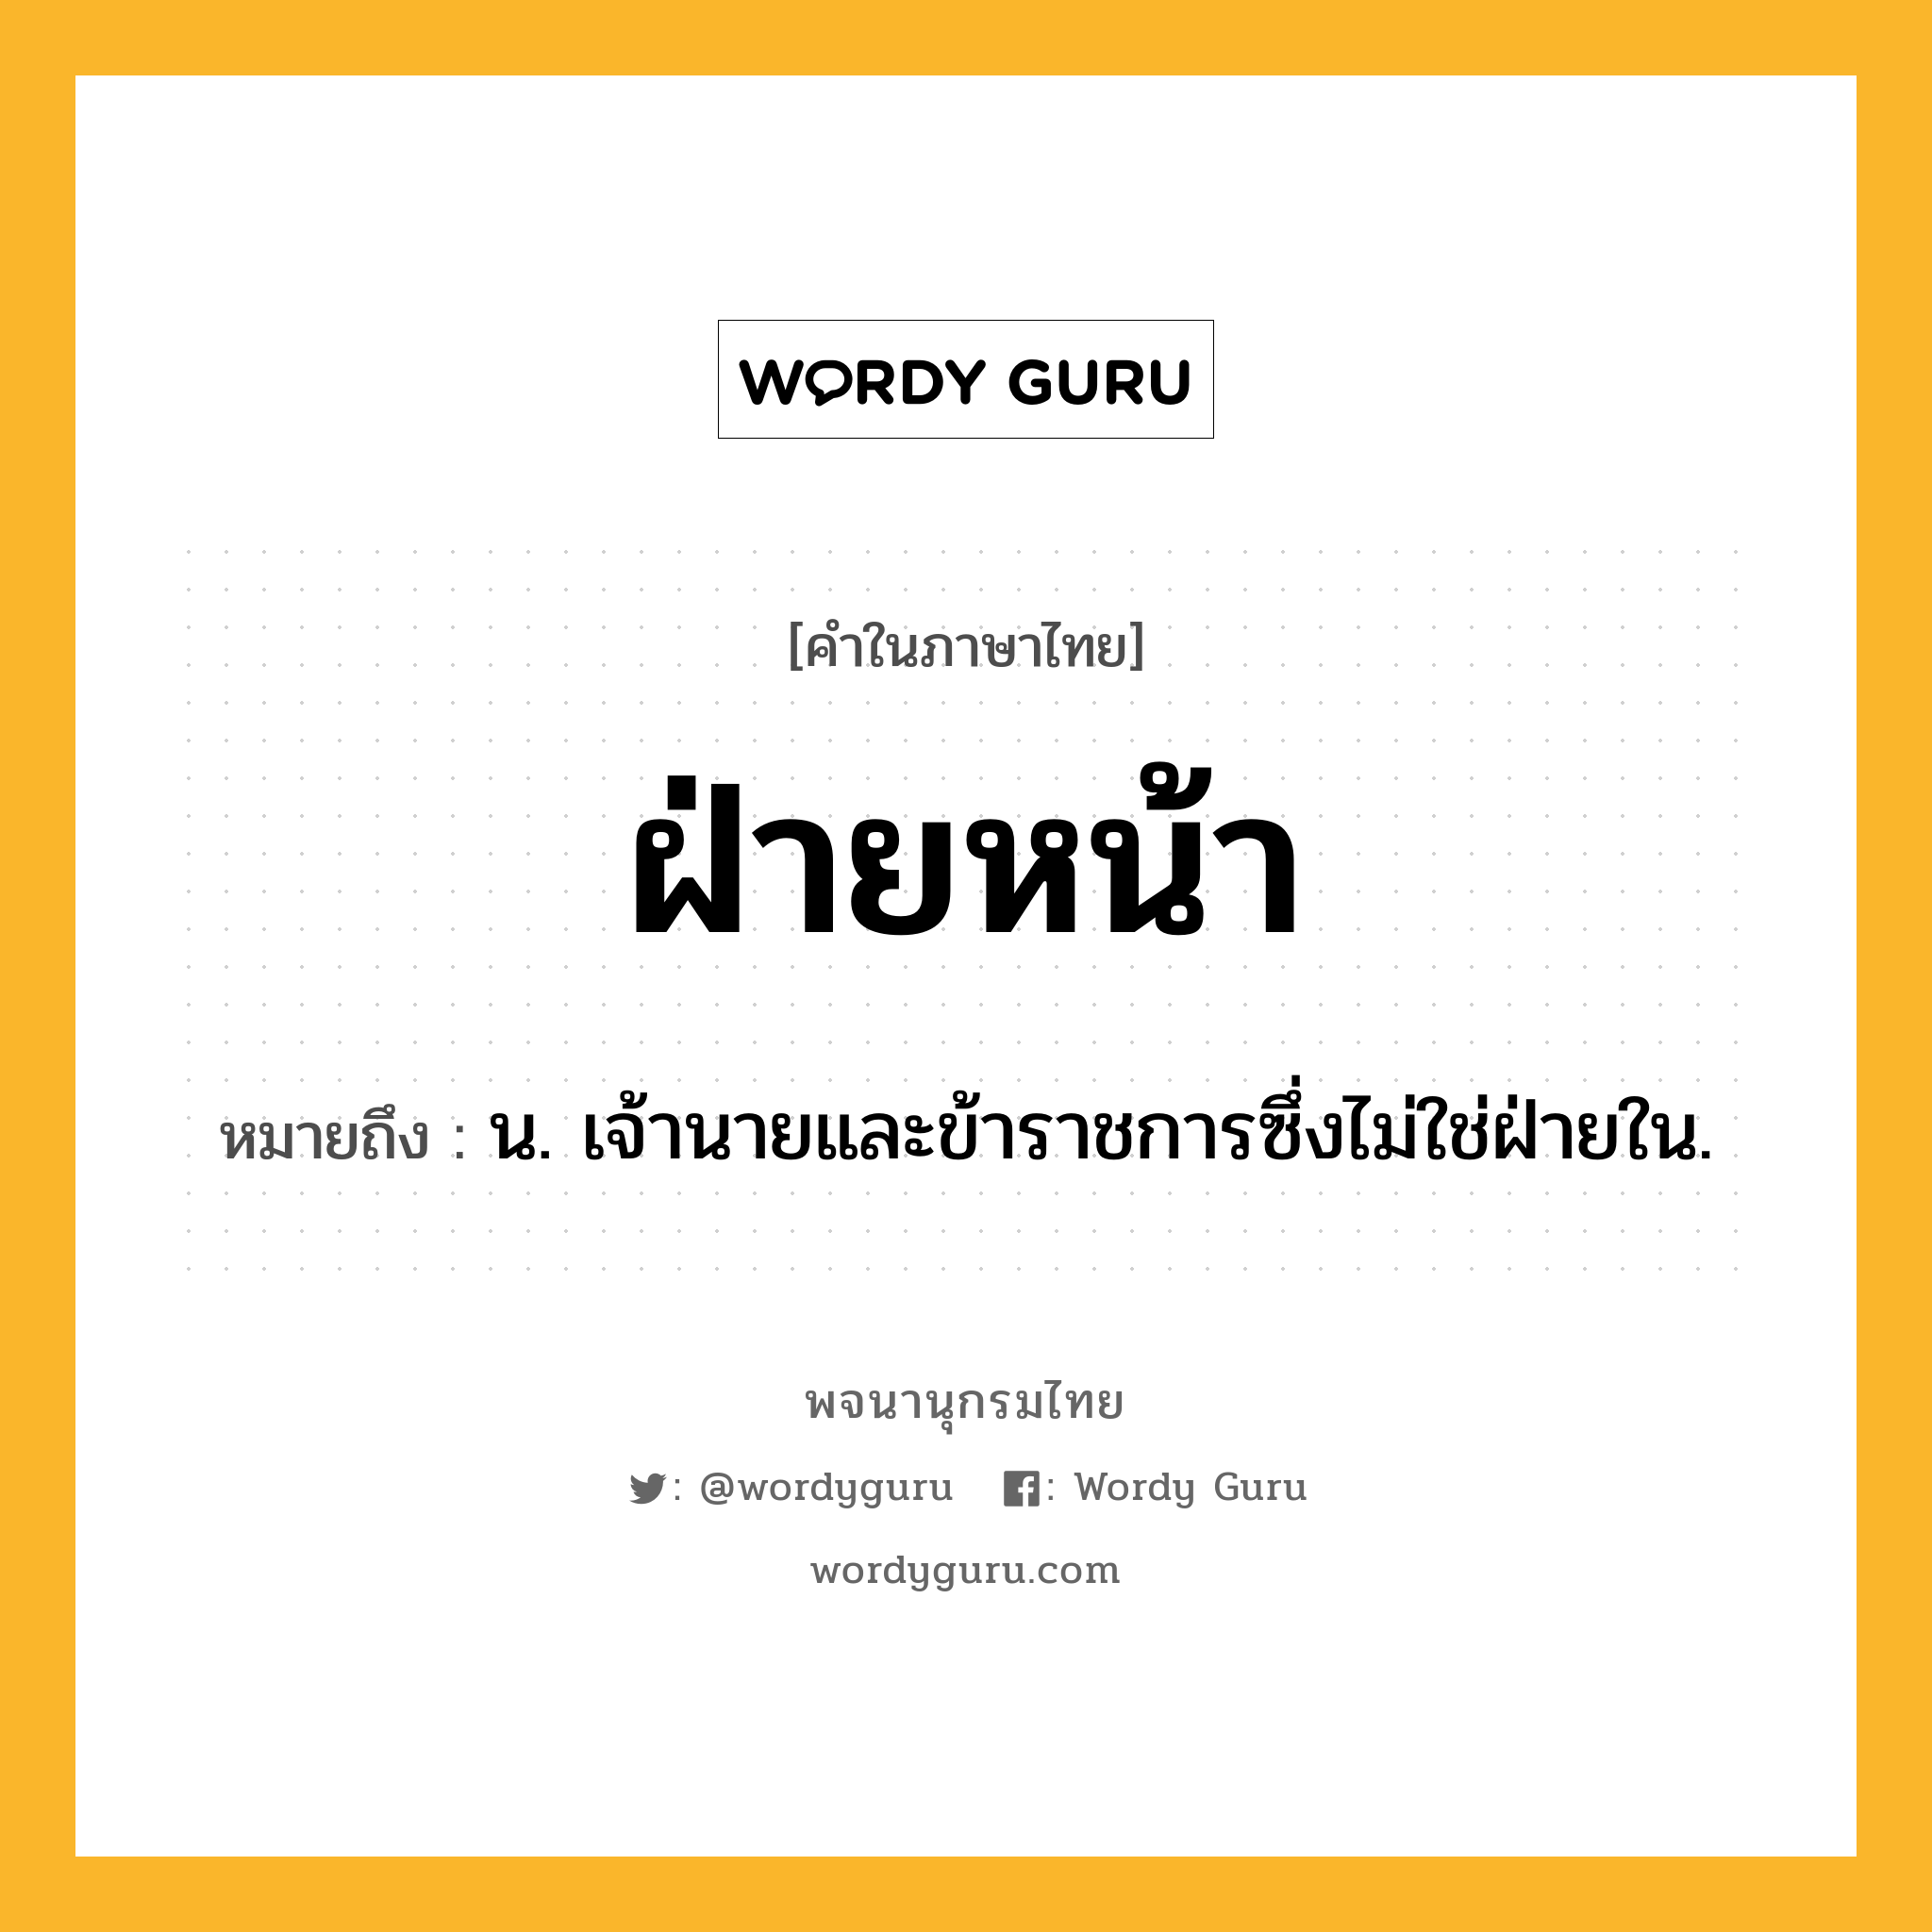 ฝ่ายหน้า ความหมาย หมายถึงอะไร?, คำในภาษาไทย ฝ่ายหน้า หมายถึง น. เจ้านายและข้าราชการซึ่งไม่ใช่ฝ่ายใน.